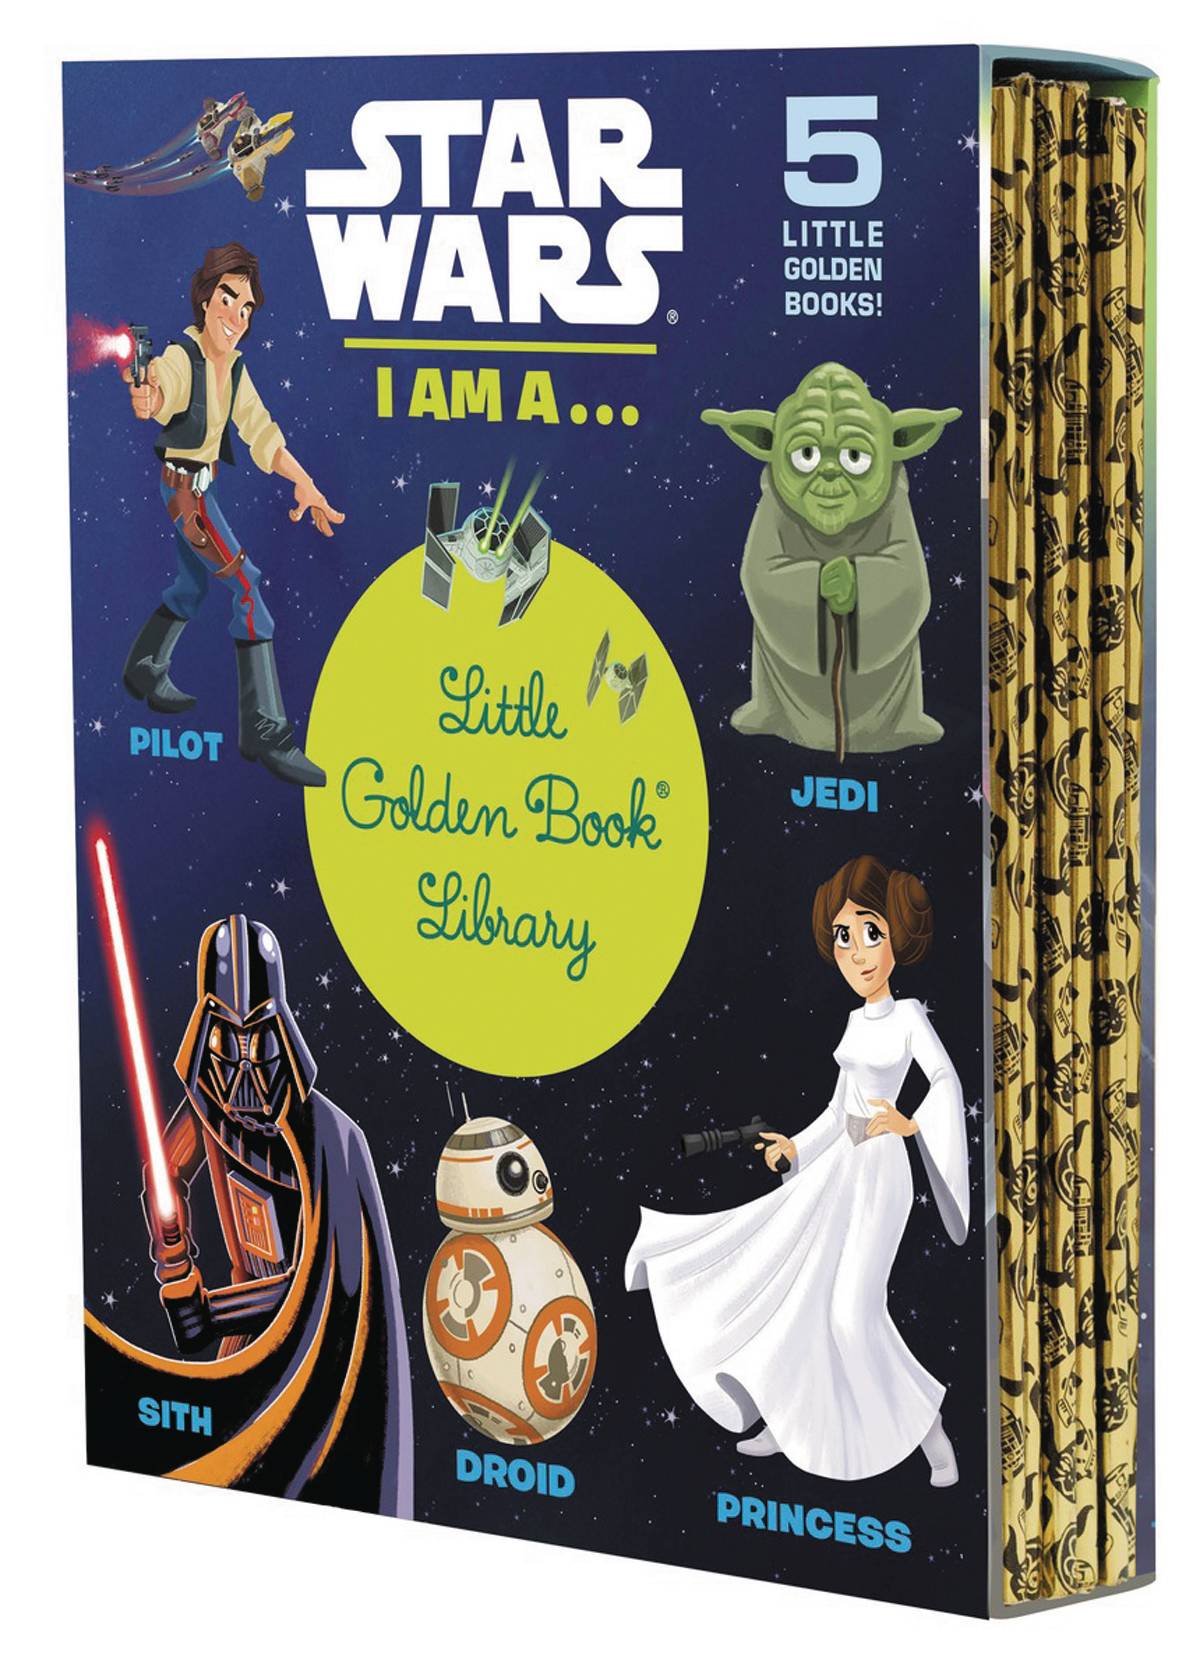 I am книга. Little Wars книга. Книга Star Wars для детей. Звездные войны том 1 книга. Библиотека Звездные войны.